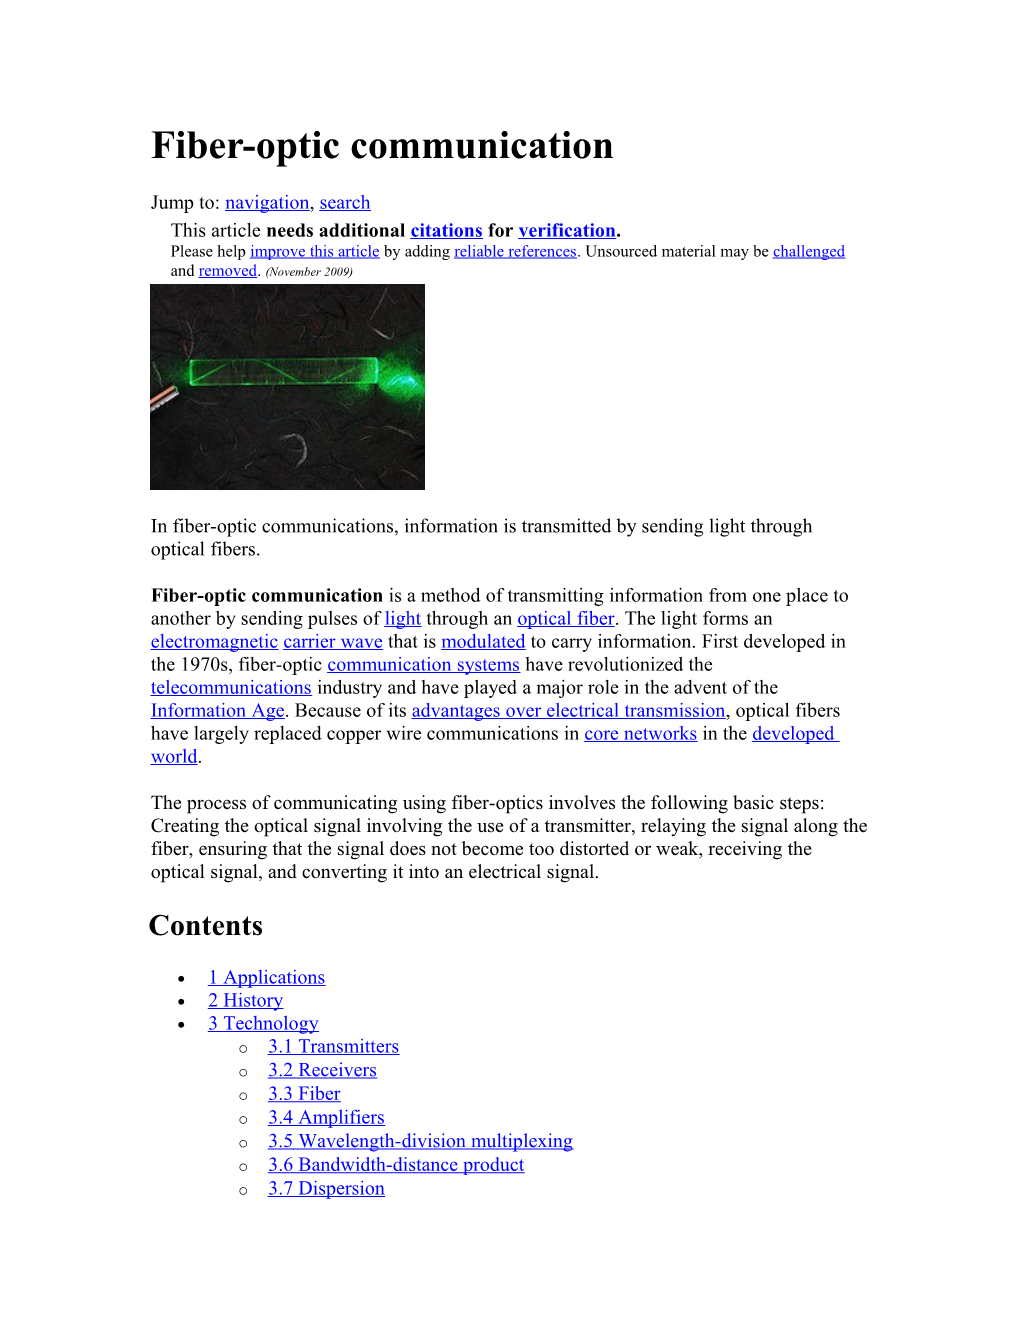 Fiber-Optic Communication